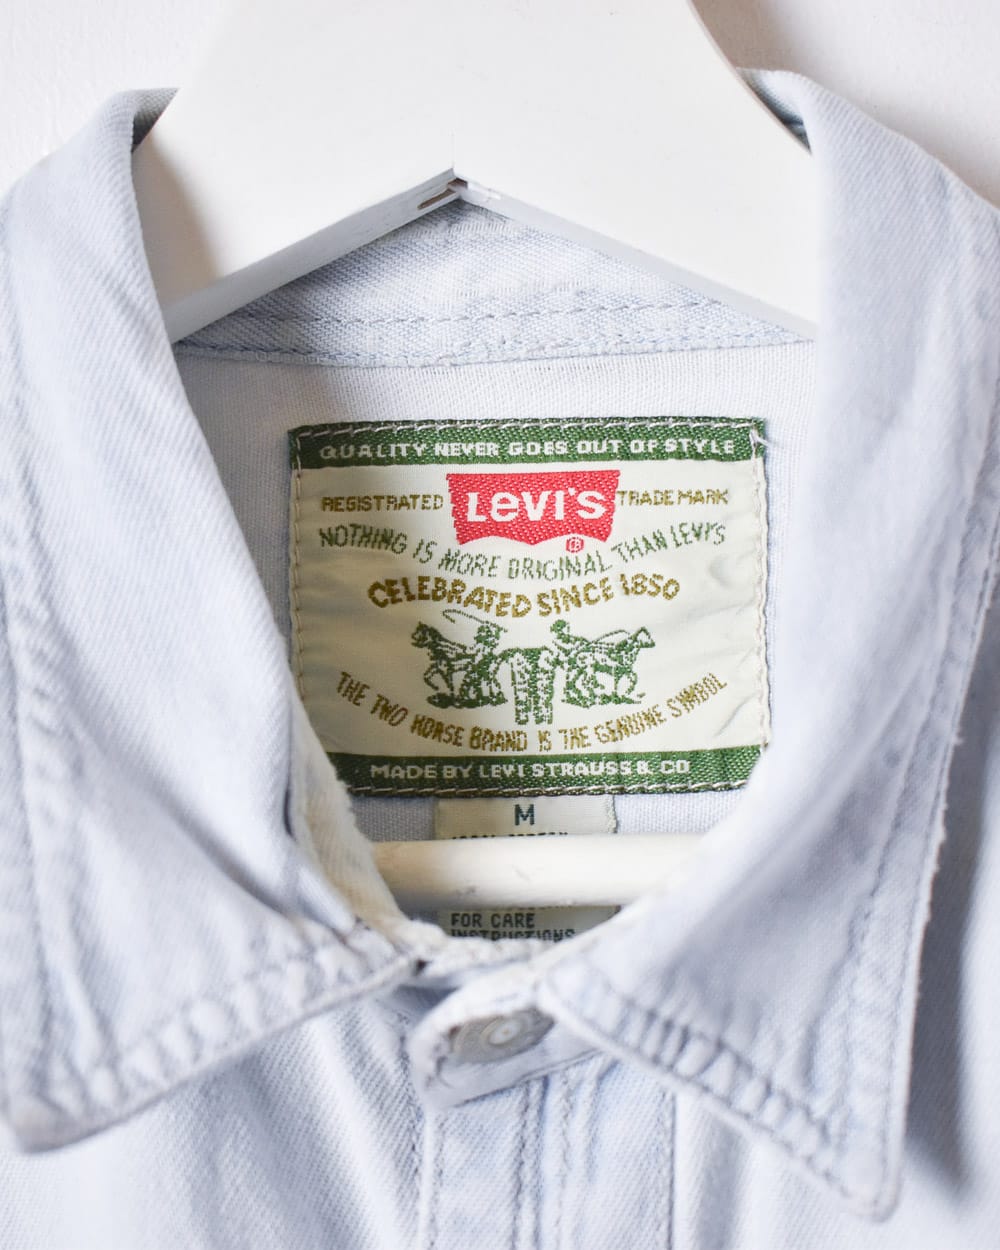 BabyBlue Levi's Denim Shirt - Medium